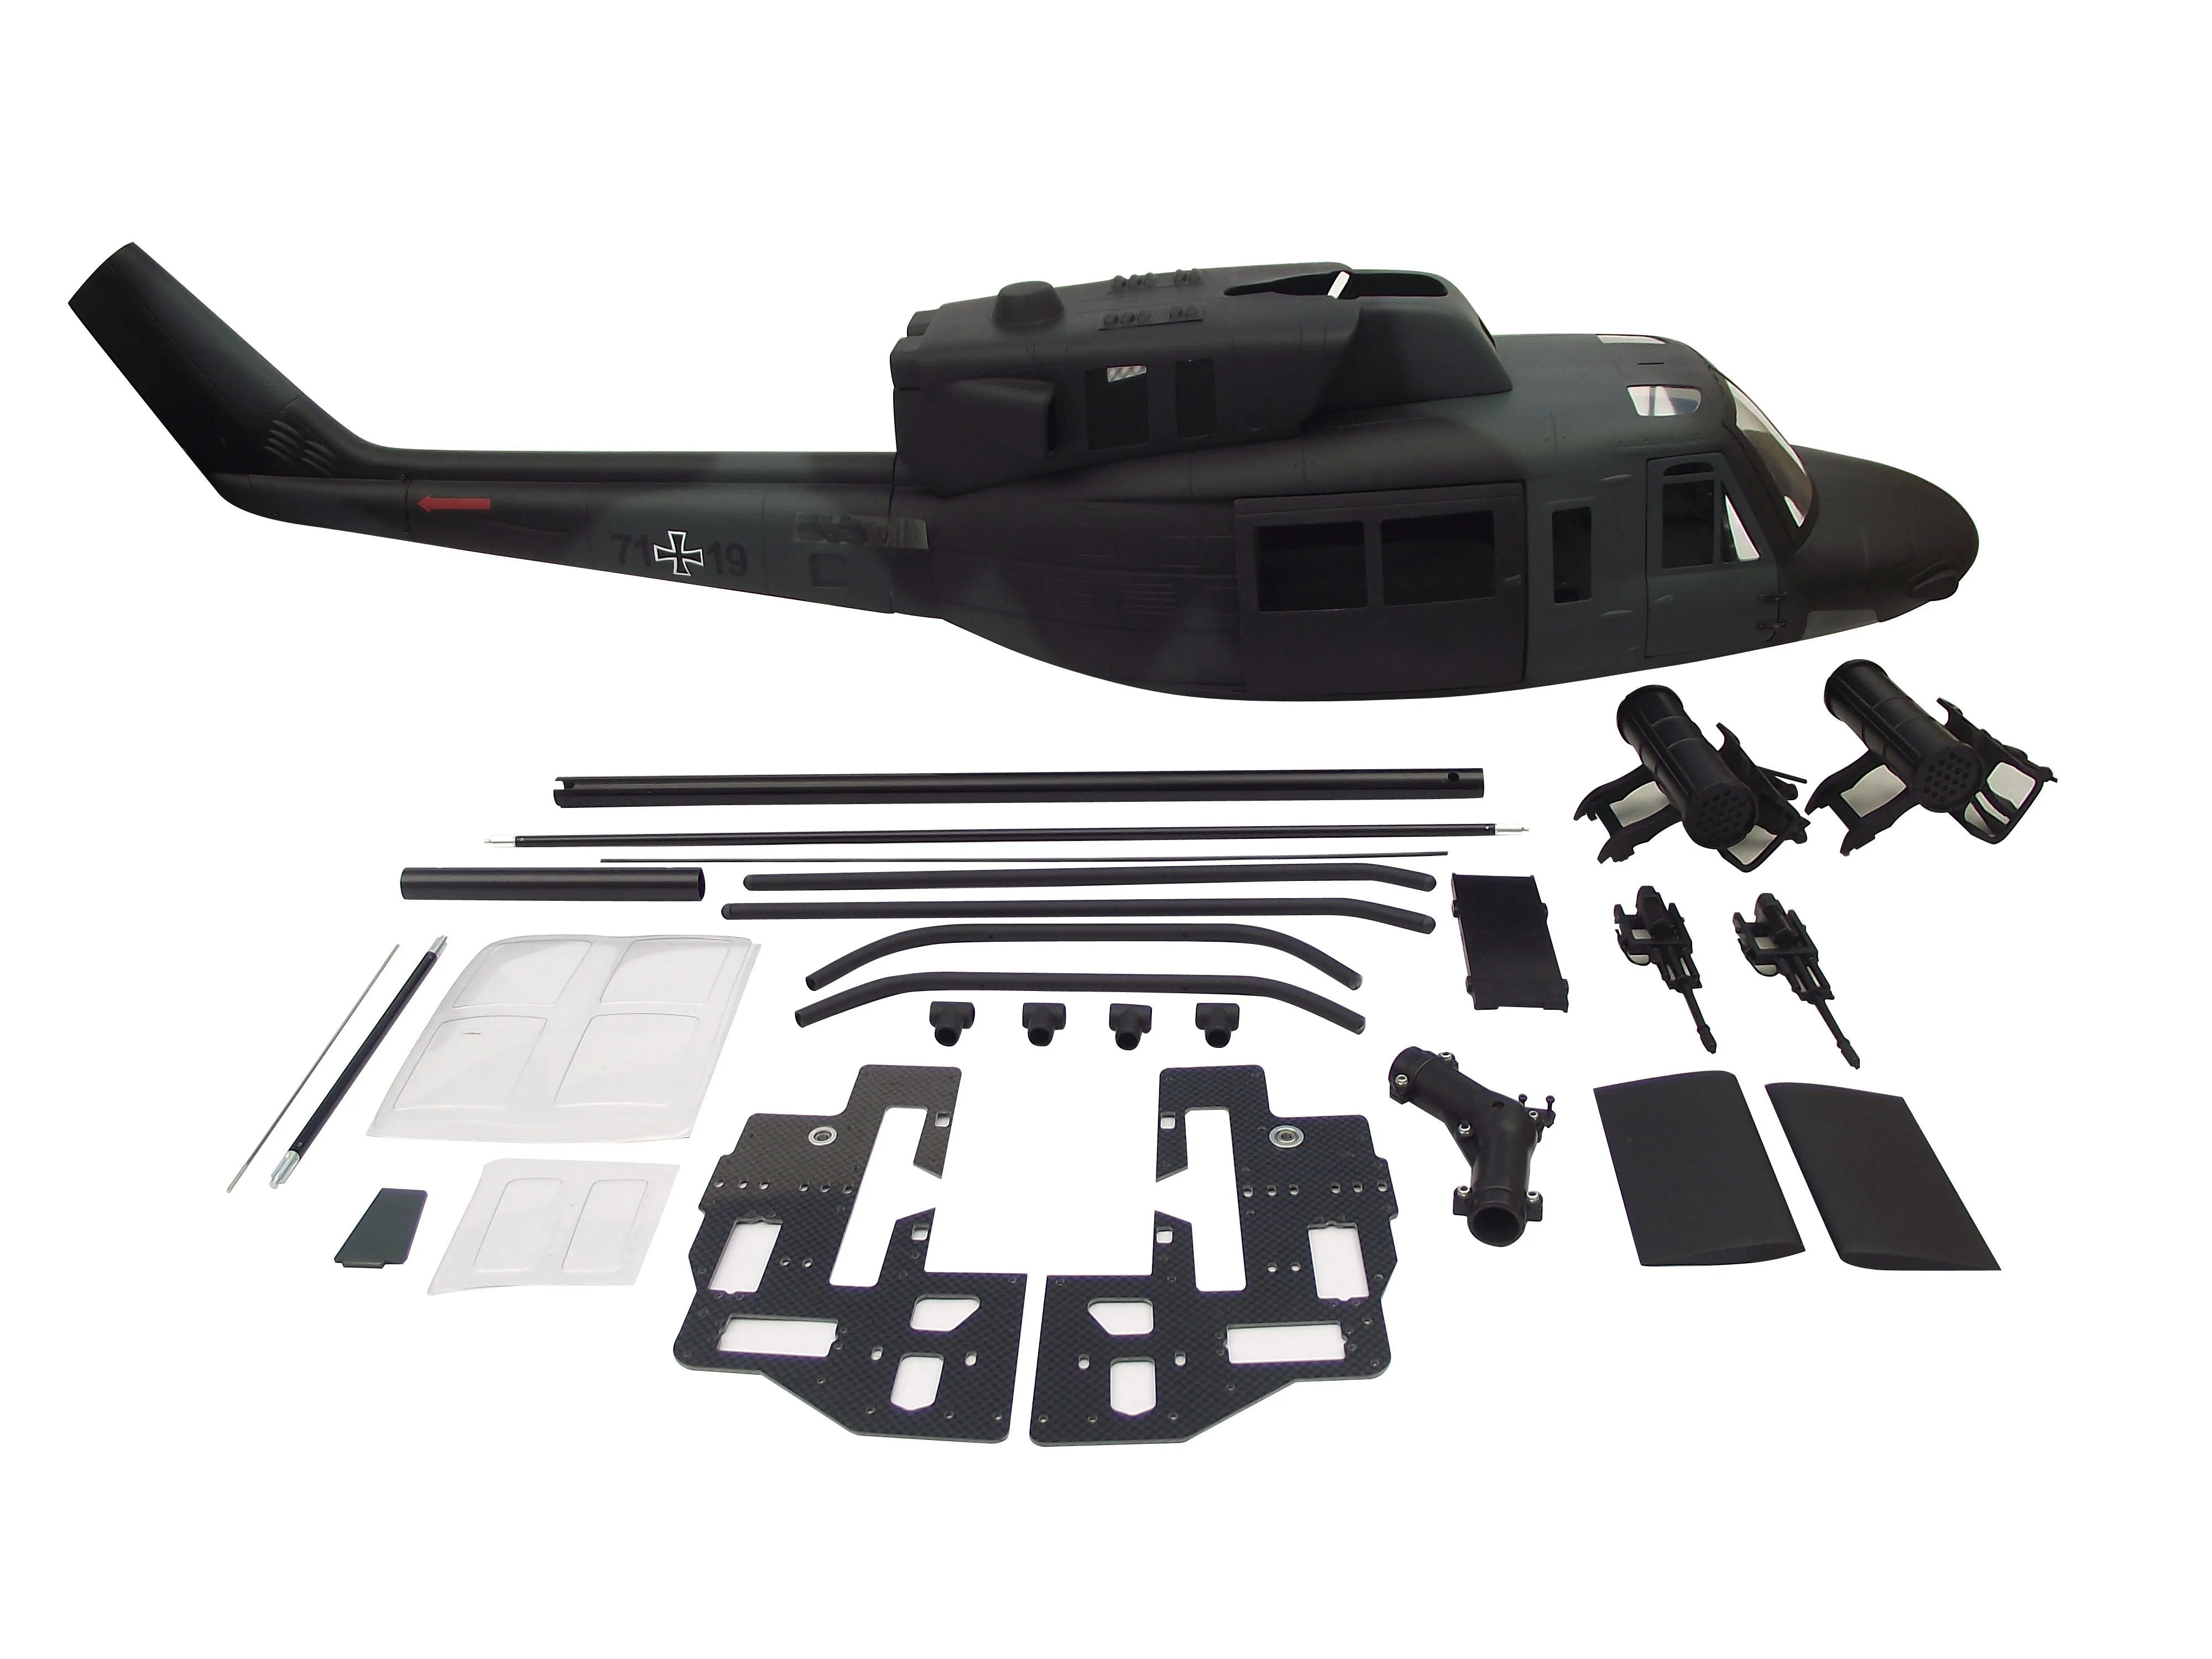 Предварительная 800 Размер fuselage для колокольчика UH-1D масштаб вертолета комплект